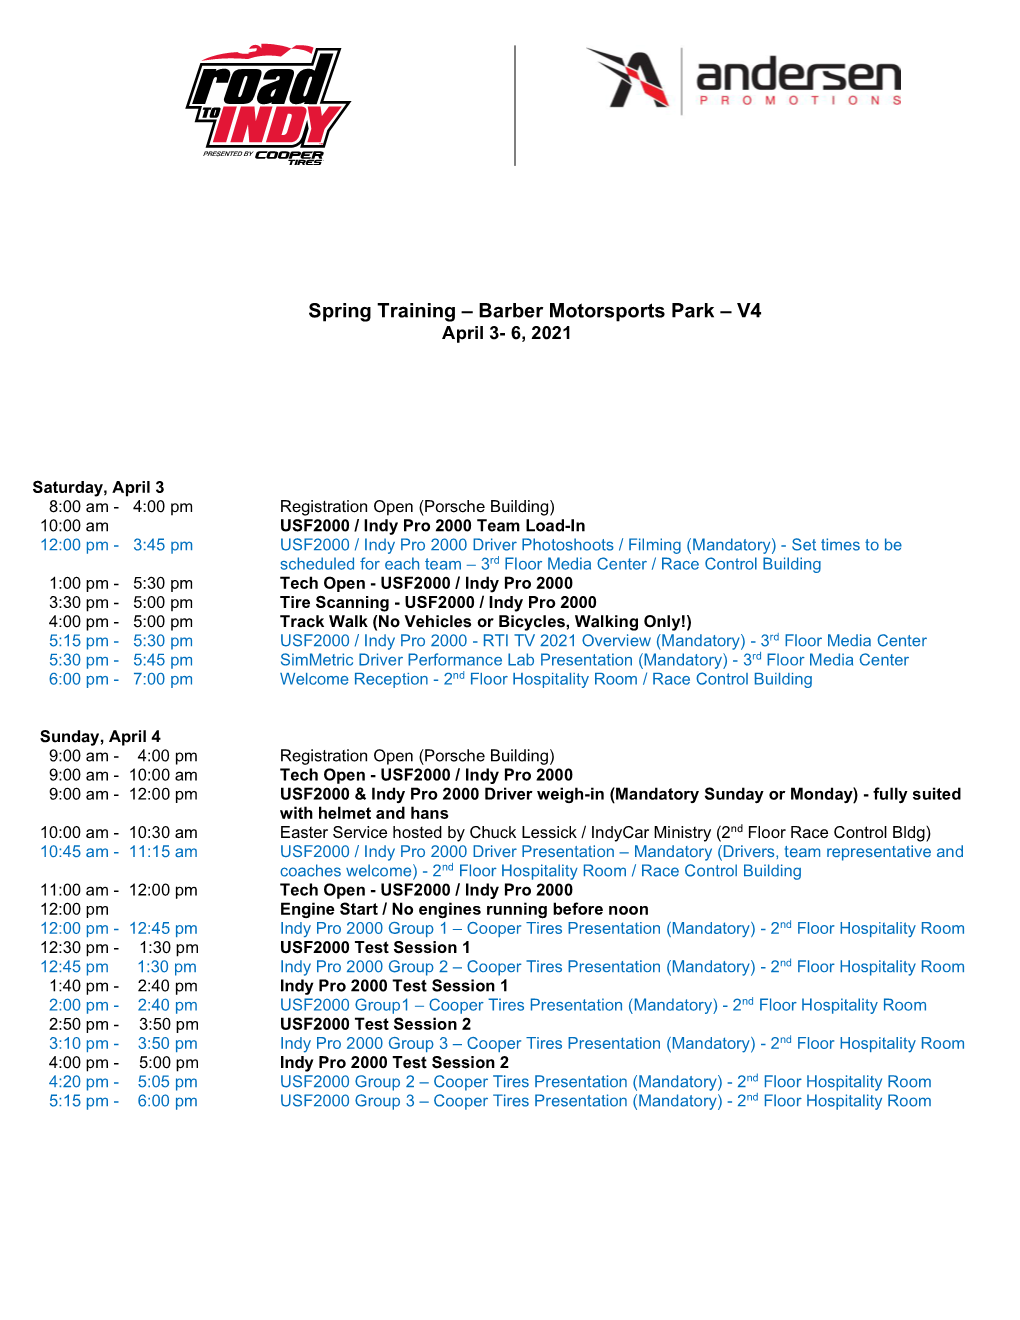 2021 Barber Motorsports Park Spring Training Schedule V4